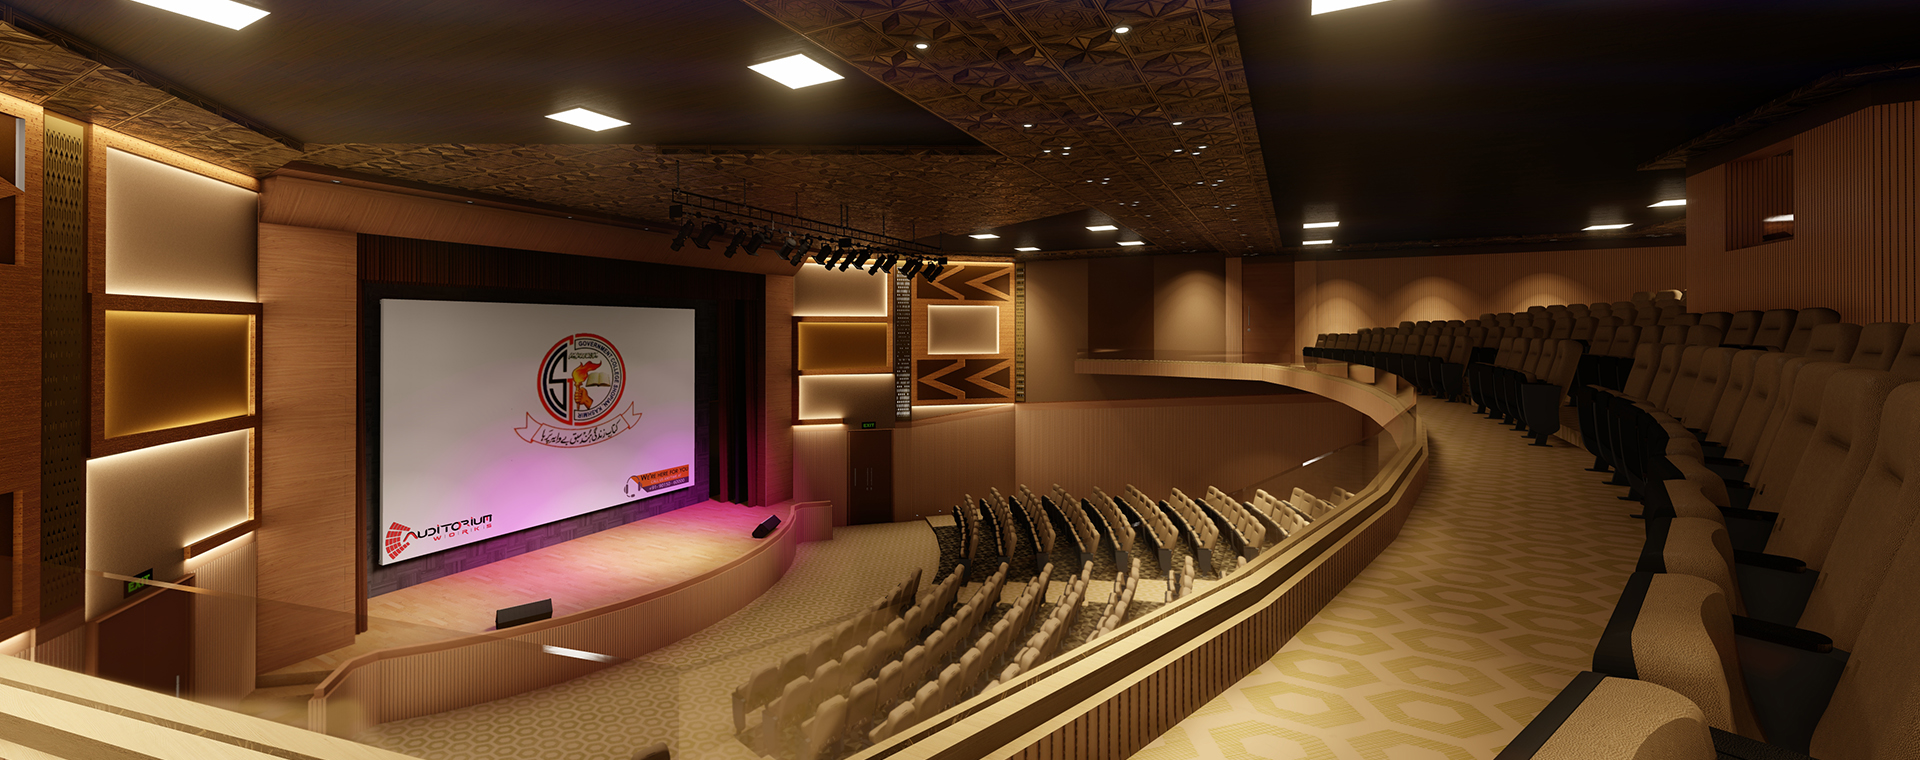 Splendid Auditorium Works